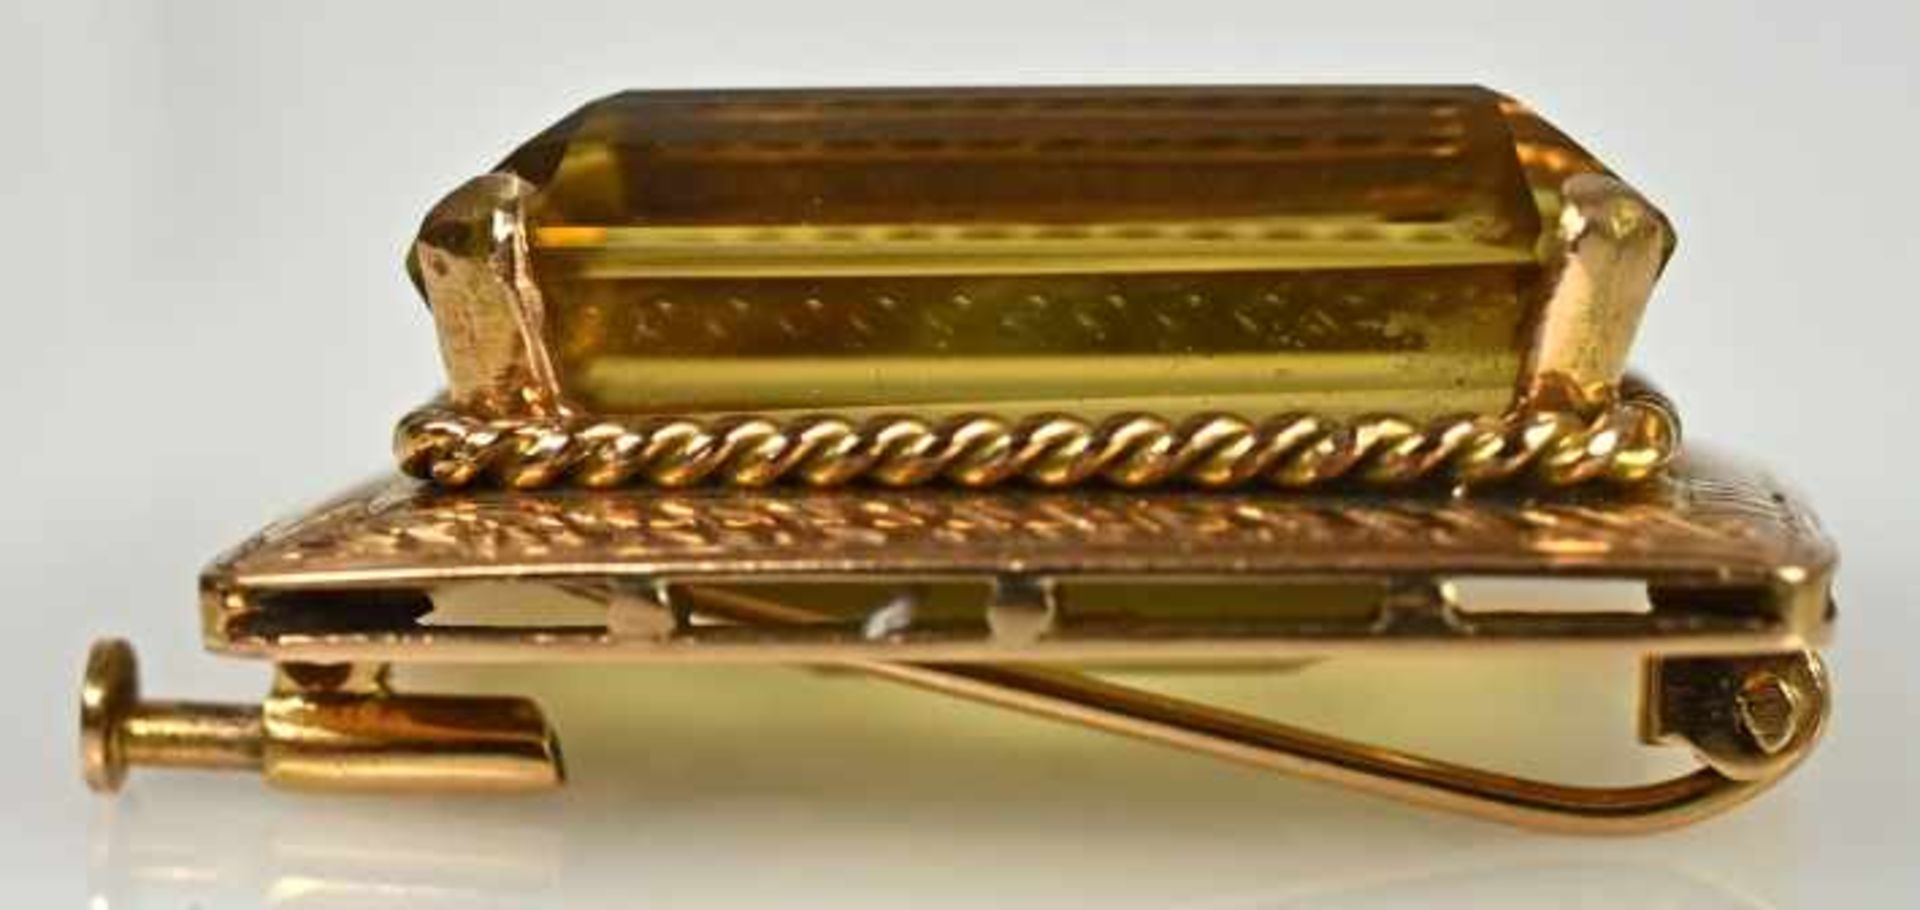 ZITRIN-BROSCHE rechteckiger Zitrinstein mit Treppenschliff in seitlich dekorierter Goldfassung - Bild 3 aus 3